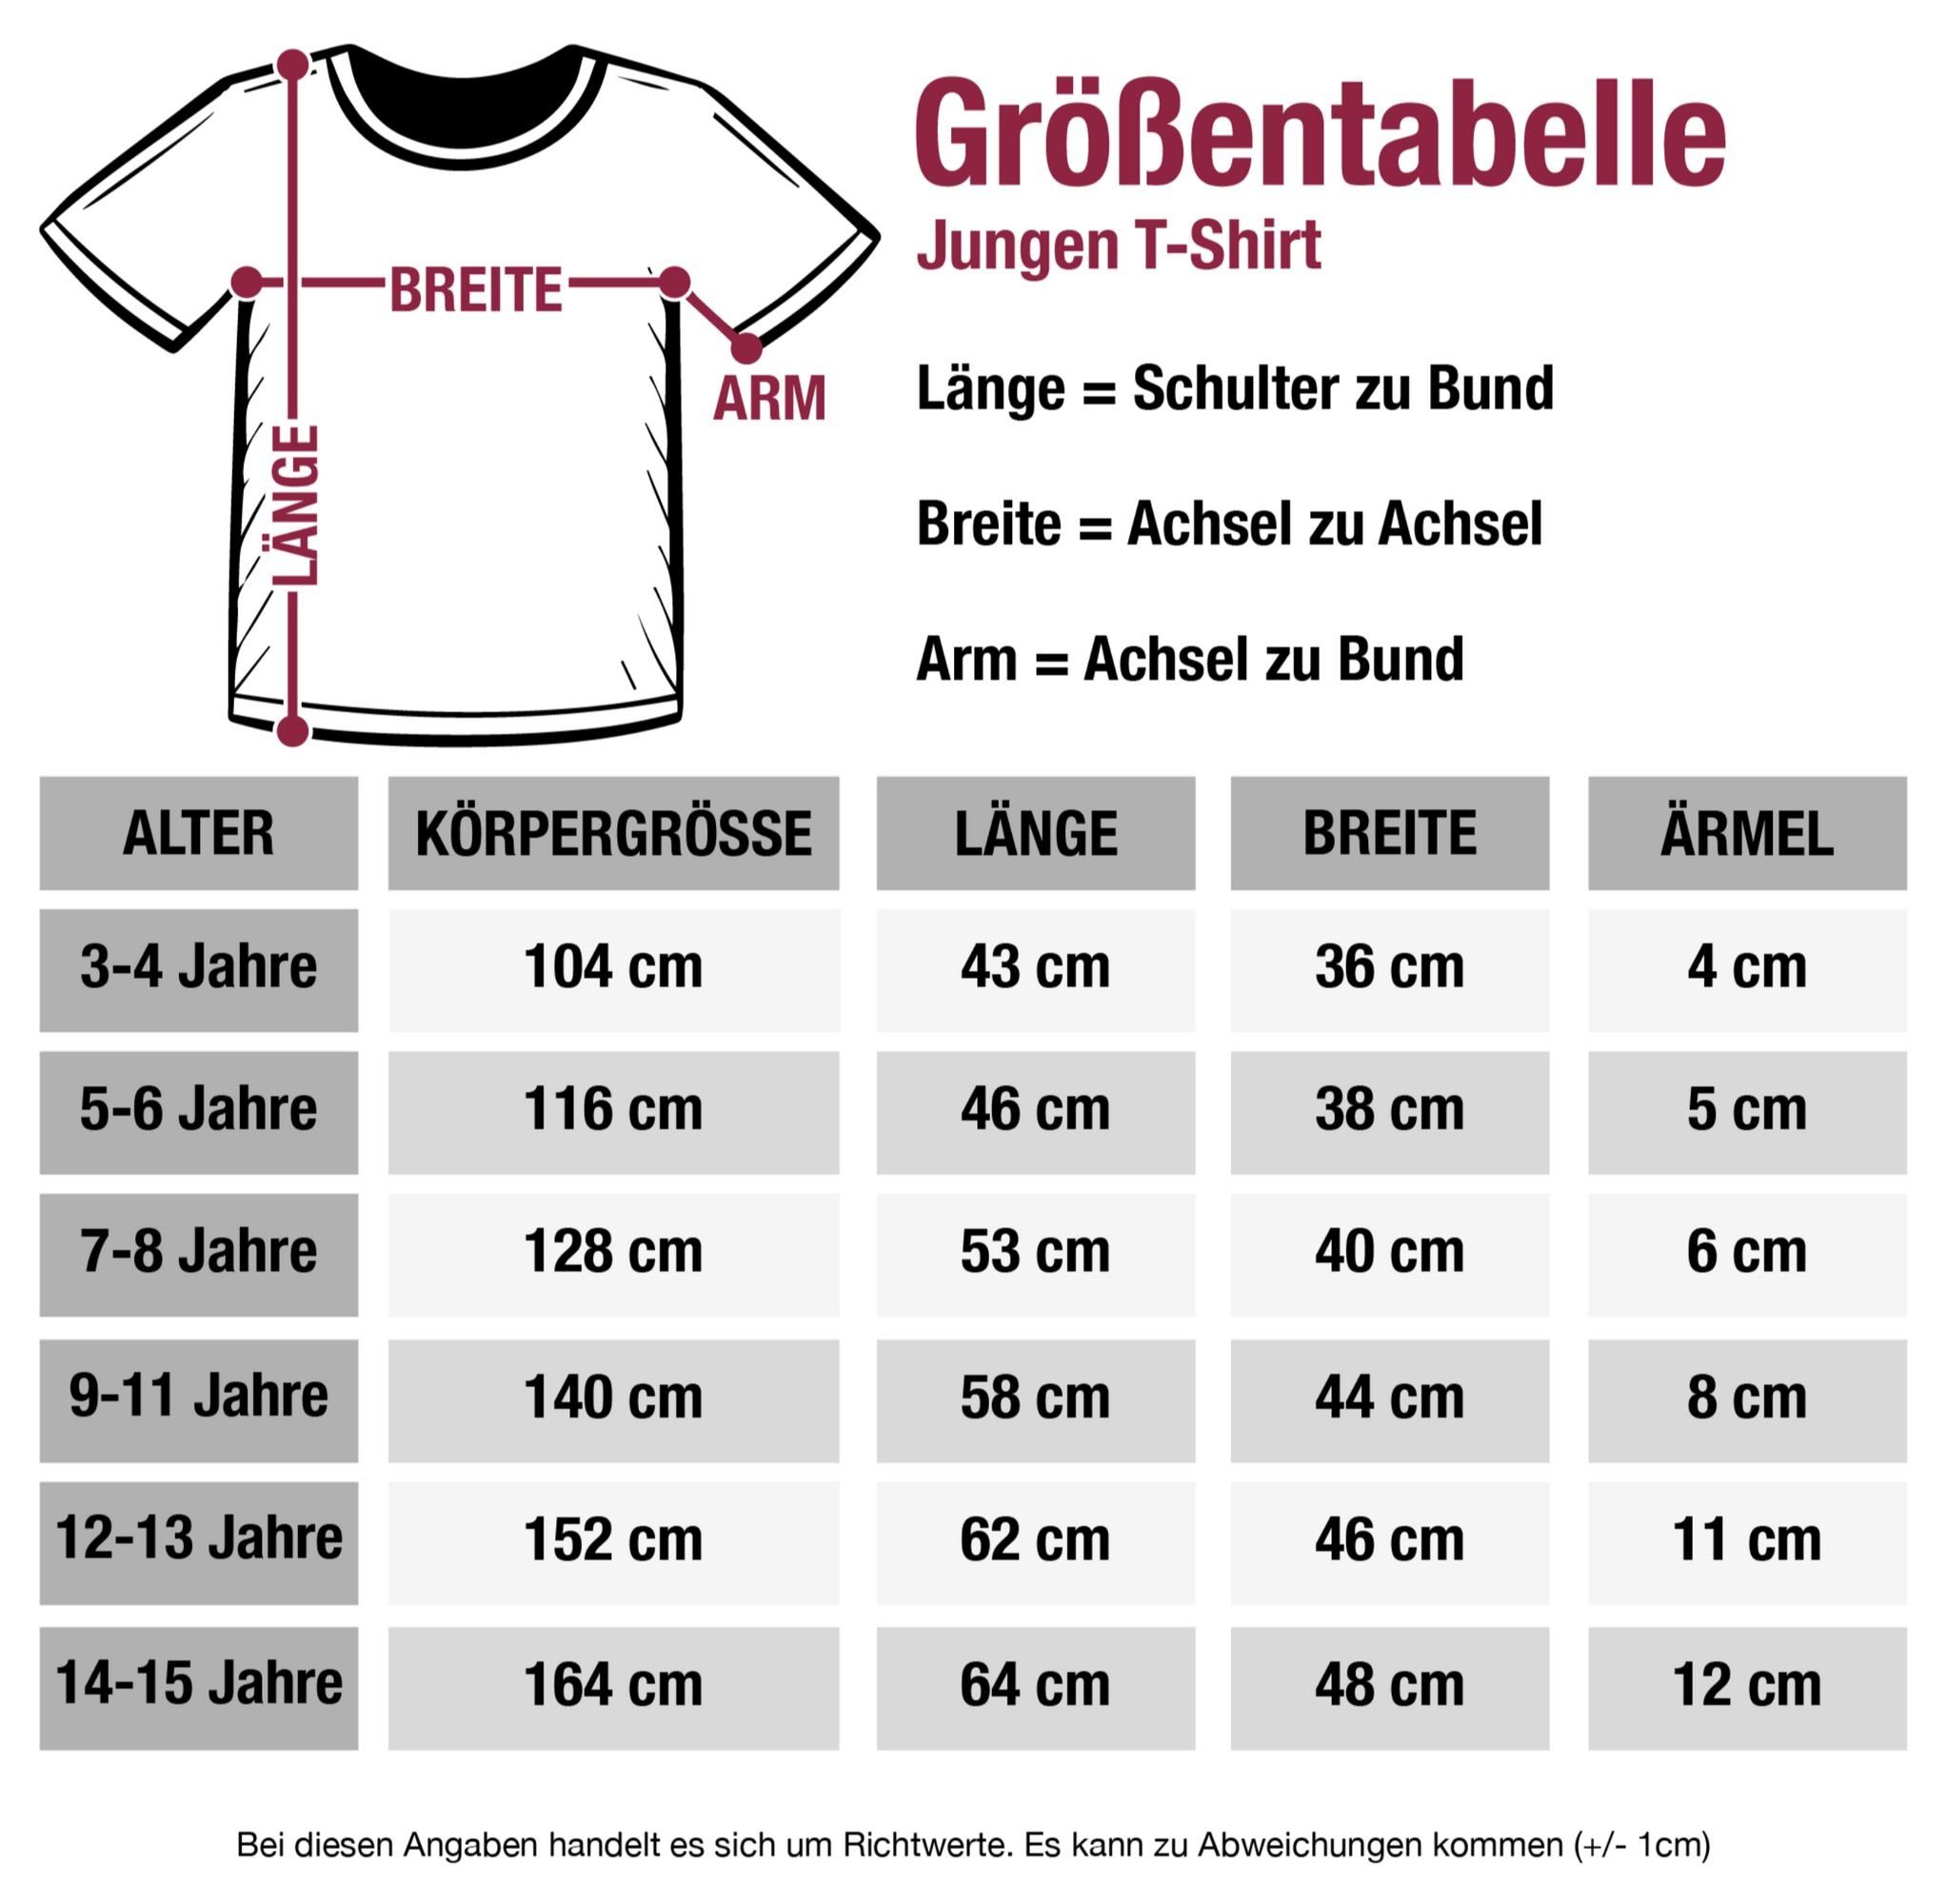 Shirtracer T-Shirt weiß Sport Schwarz Handball 2 Spielen Echte Kerle Kleidung Kinder